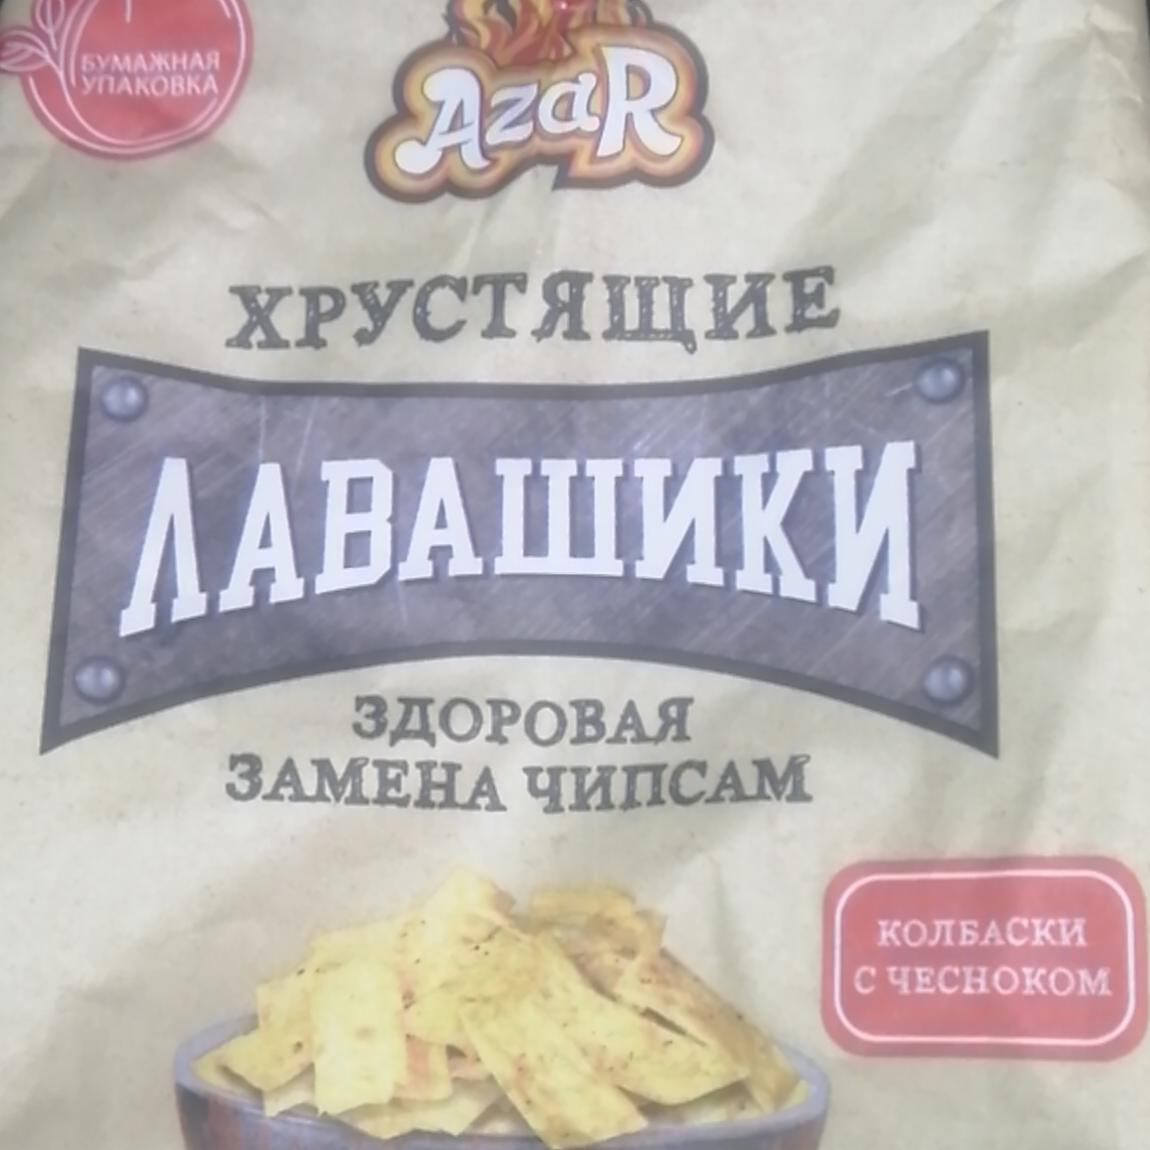 Фото - Лавашики замена чипсам вкус колбаски с чесноком Азар